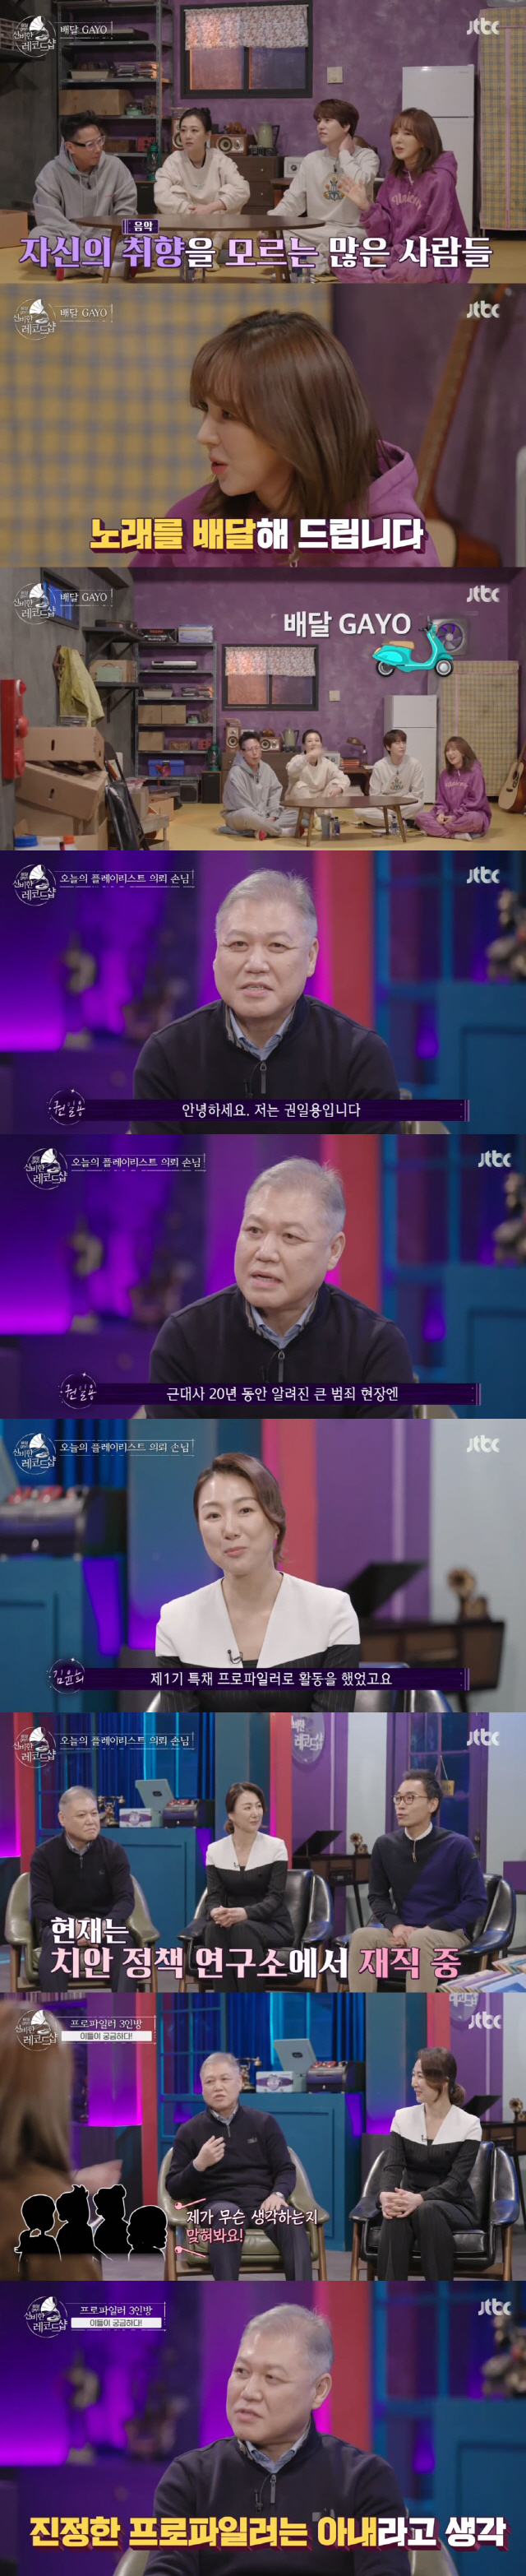 "아동 범죄, 분노감" 첫방 '신비한 레코드샵' 프로파일러 3인, 인생 …